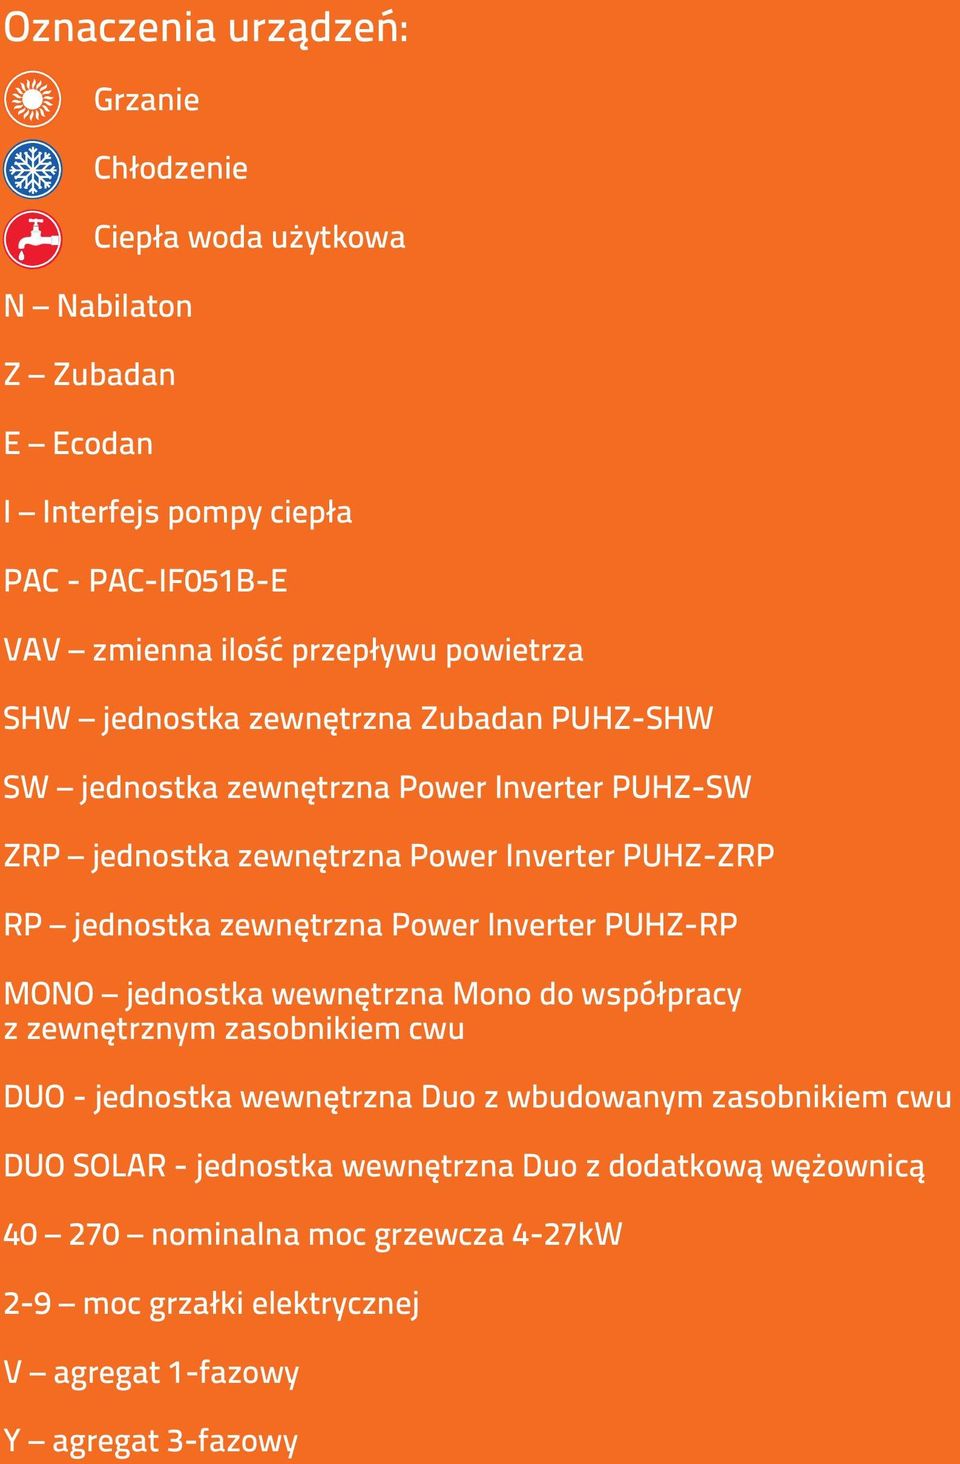 RP Power Inverter PUHZ-RP MONO Mono do współpracy z zewnętrznym zasobnikiem cwu DUO - Duo z wbudowanym zasobnikiem cwu Duo